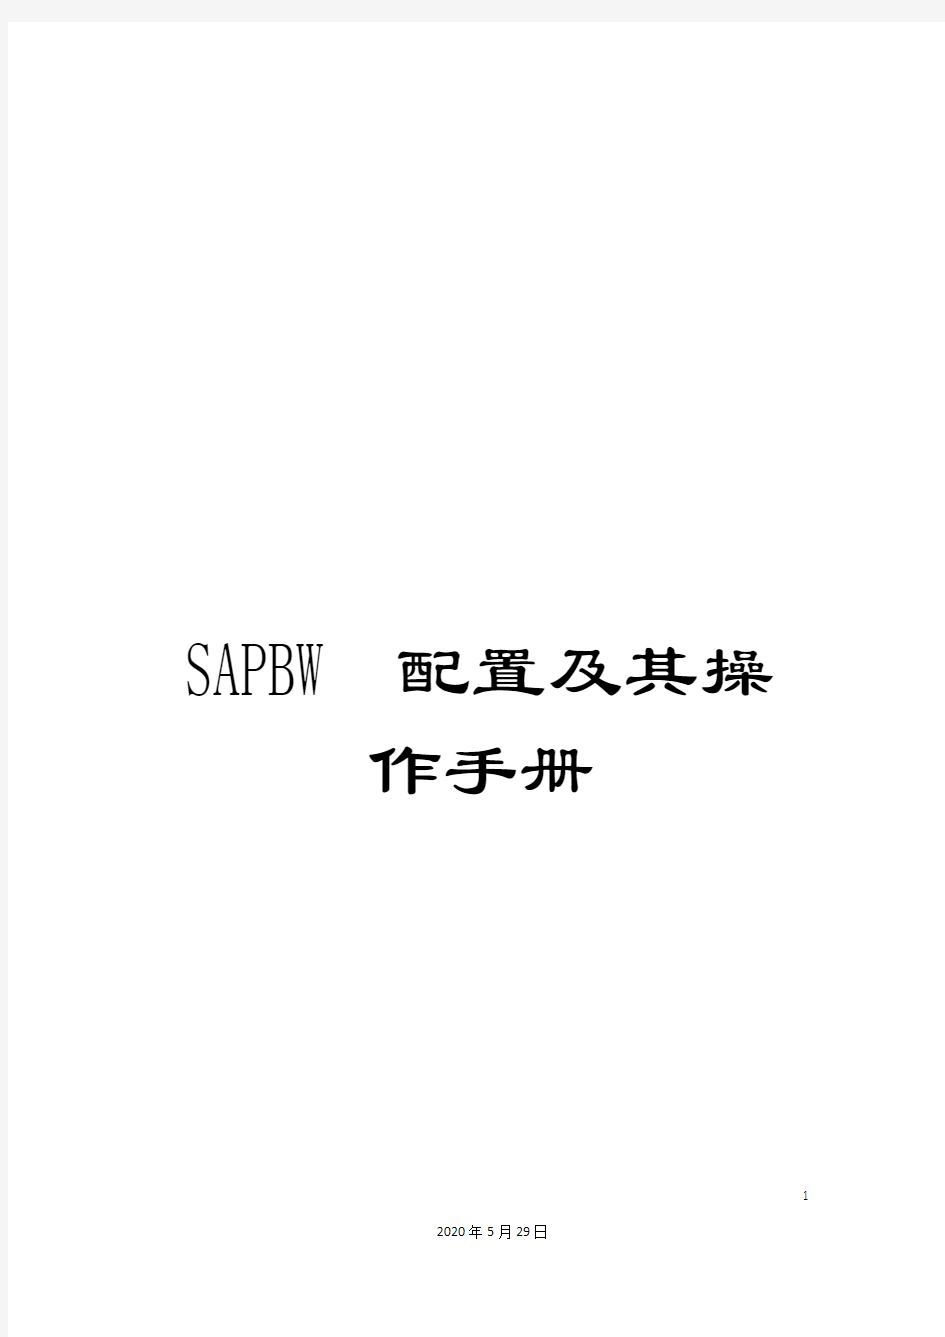 SAPBW配置及其操作手册